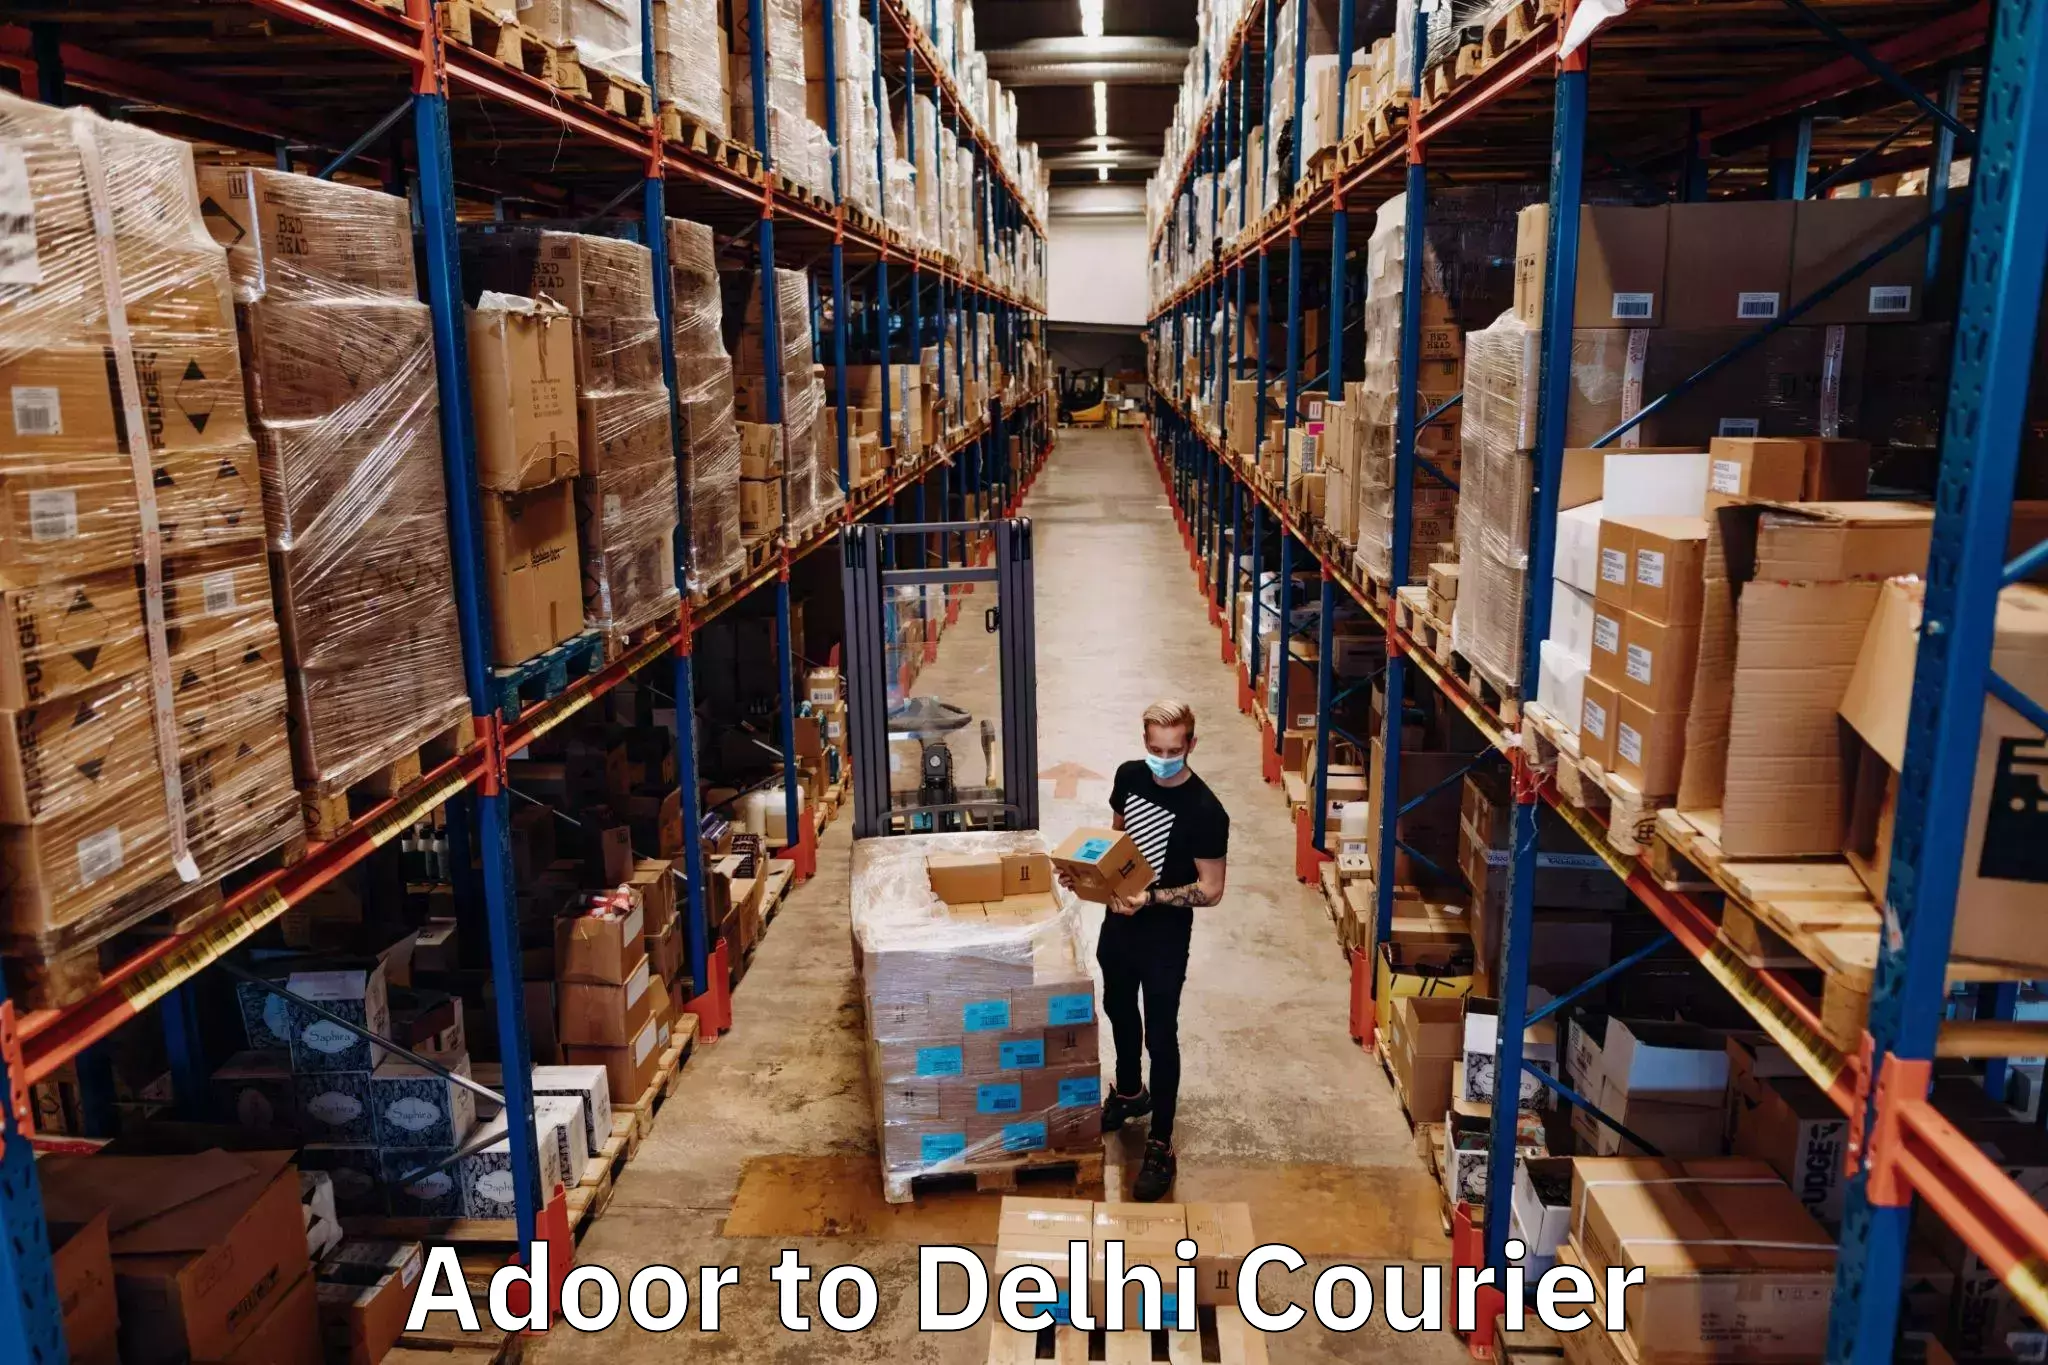 Nationwide courier service Adoor to IIT Delhi